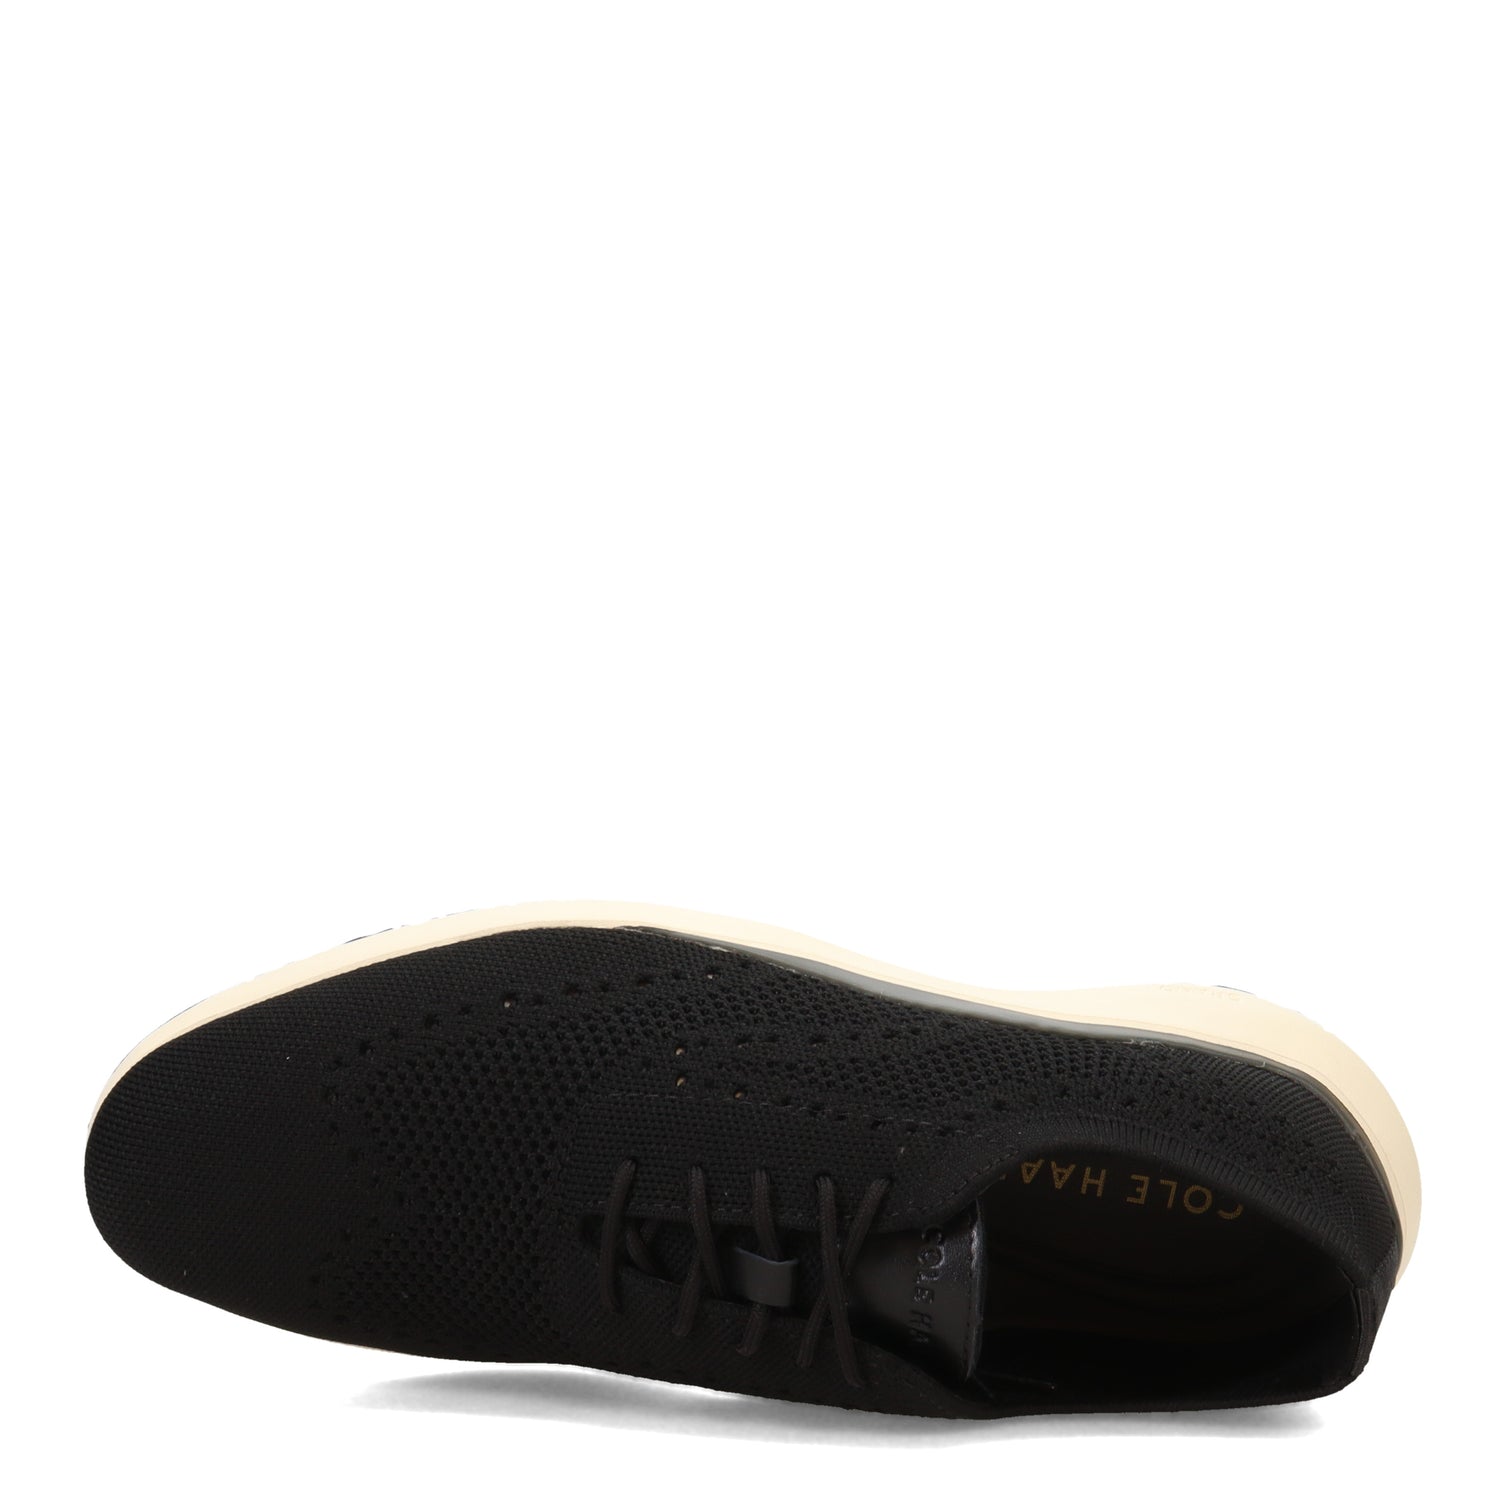 Peltz Shoes  Men's Cole Haan Grand Troy Knit Wingtip Oxford BLACK / IVORY C35726